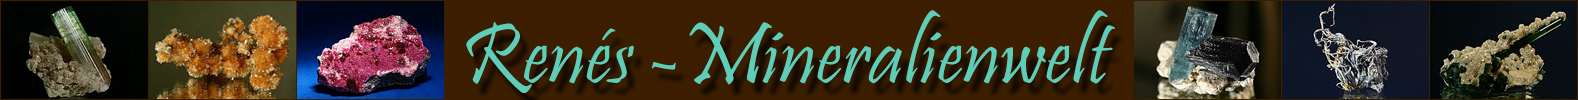 Logo Renes-Mineralienwelt